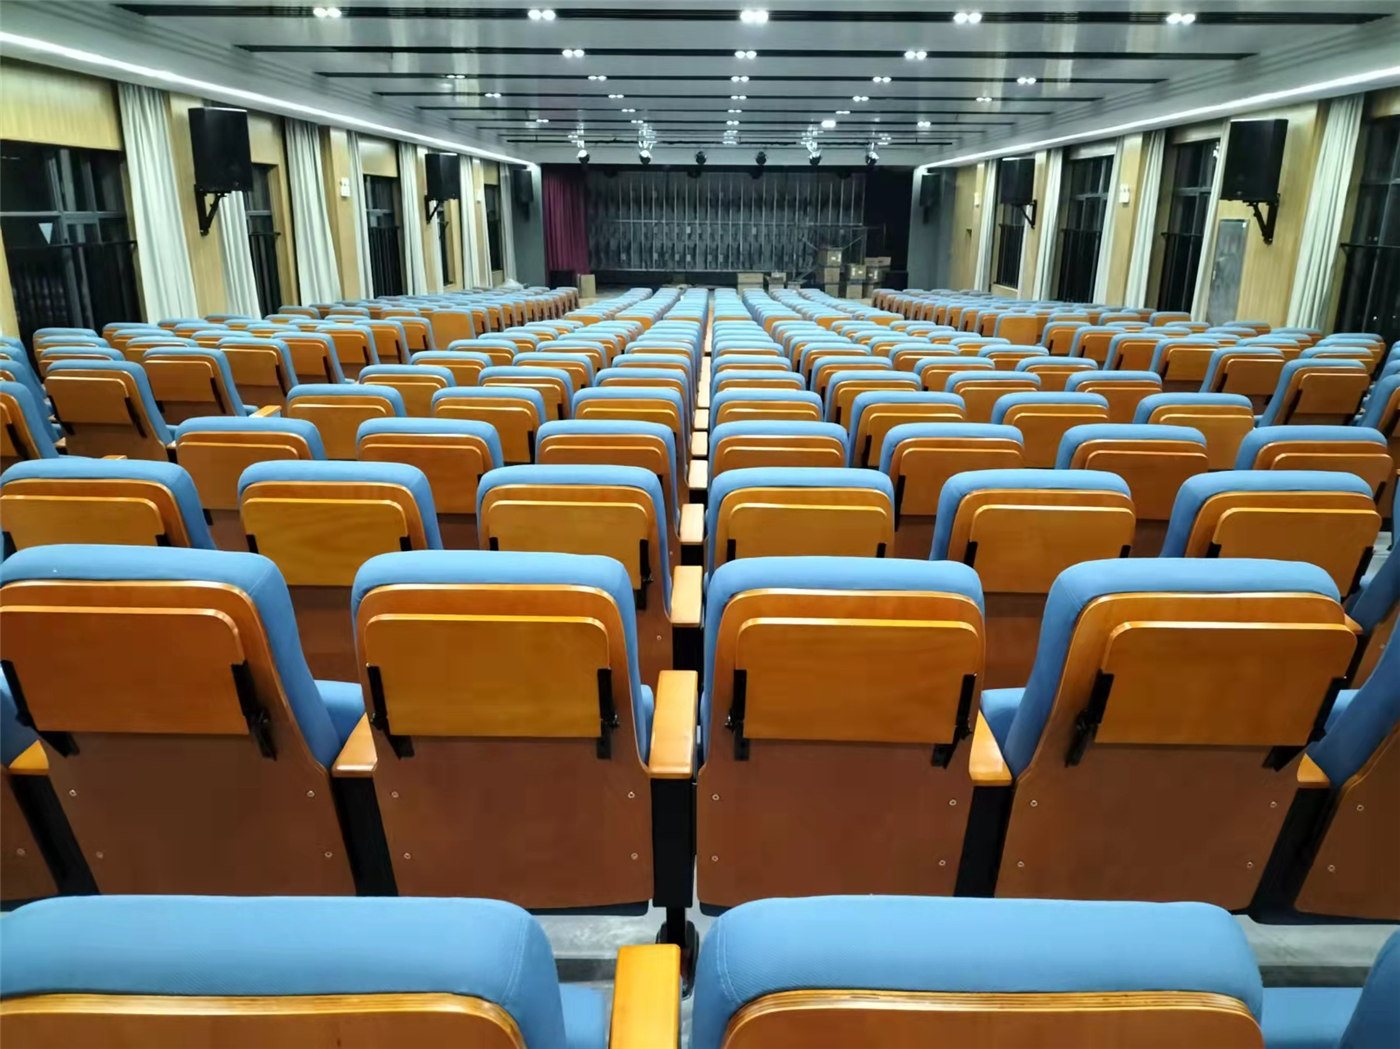 Faites une impression durable avec les solutions de sièges d'auditorium de luxe de fabricants respectés2